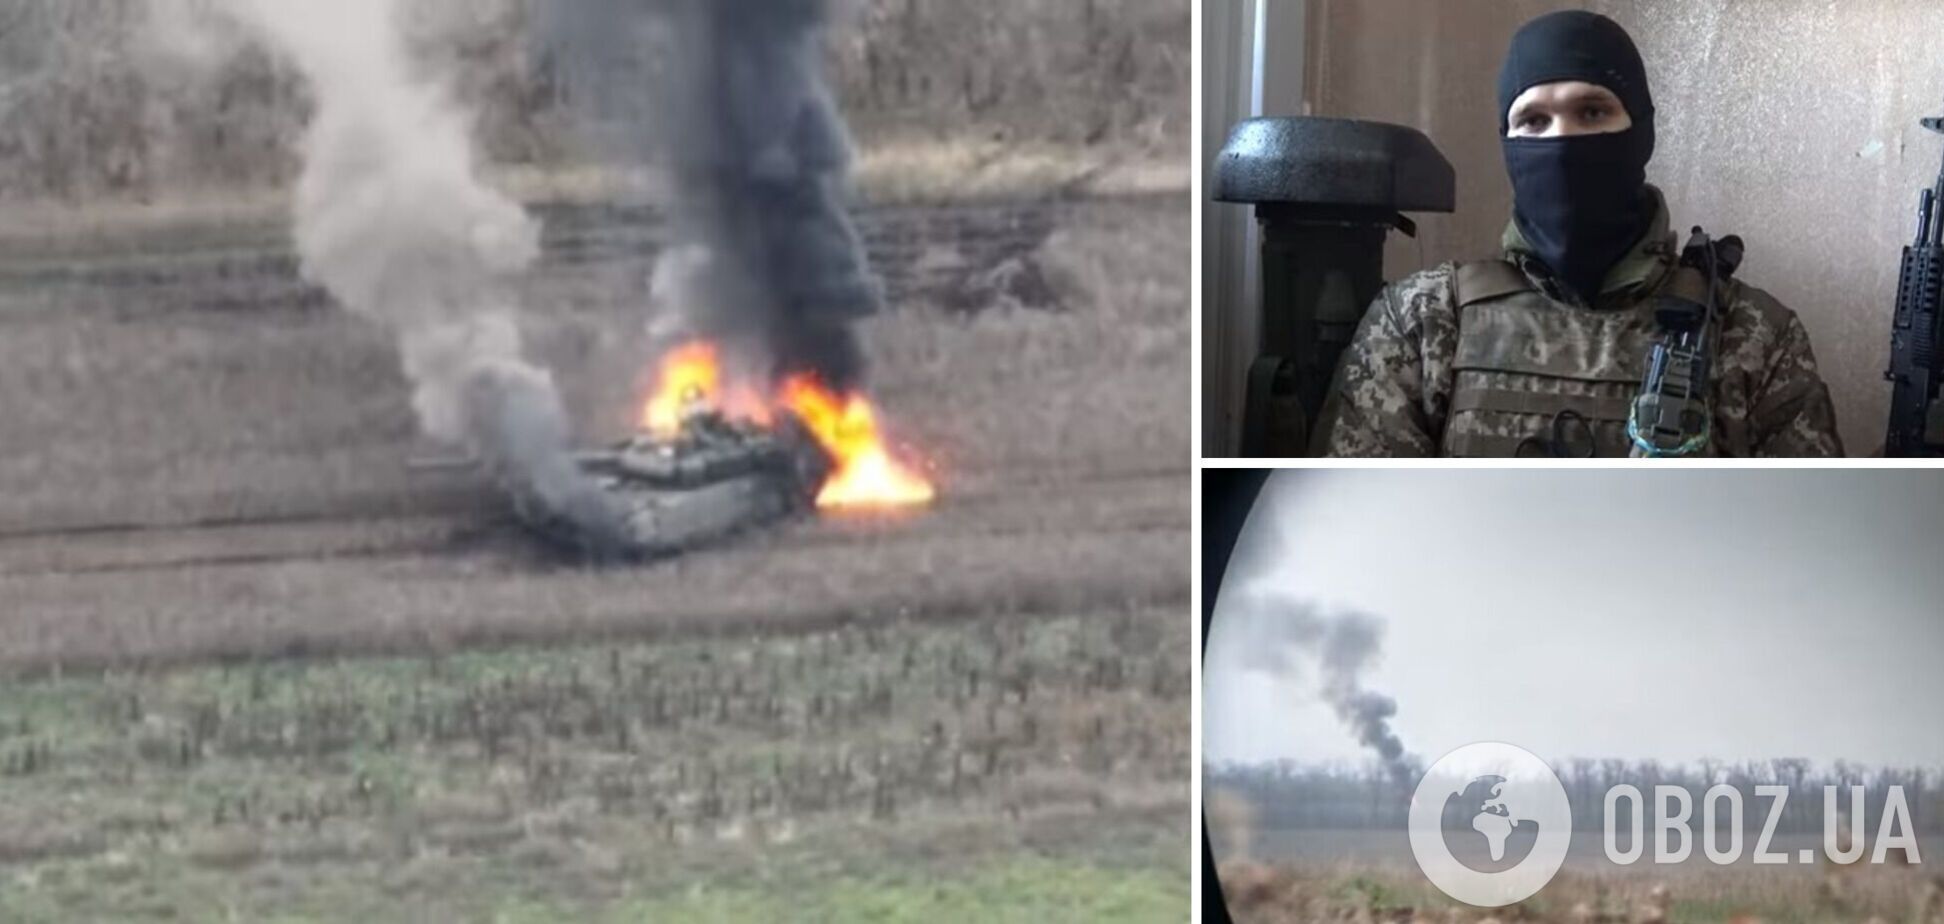 'Корпус танка просто розлетівся на молекули': український захисник розповів, як палив ворожу техніку. Відео 